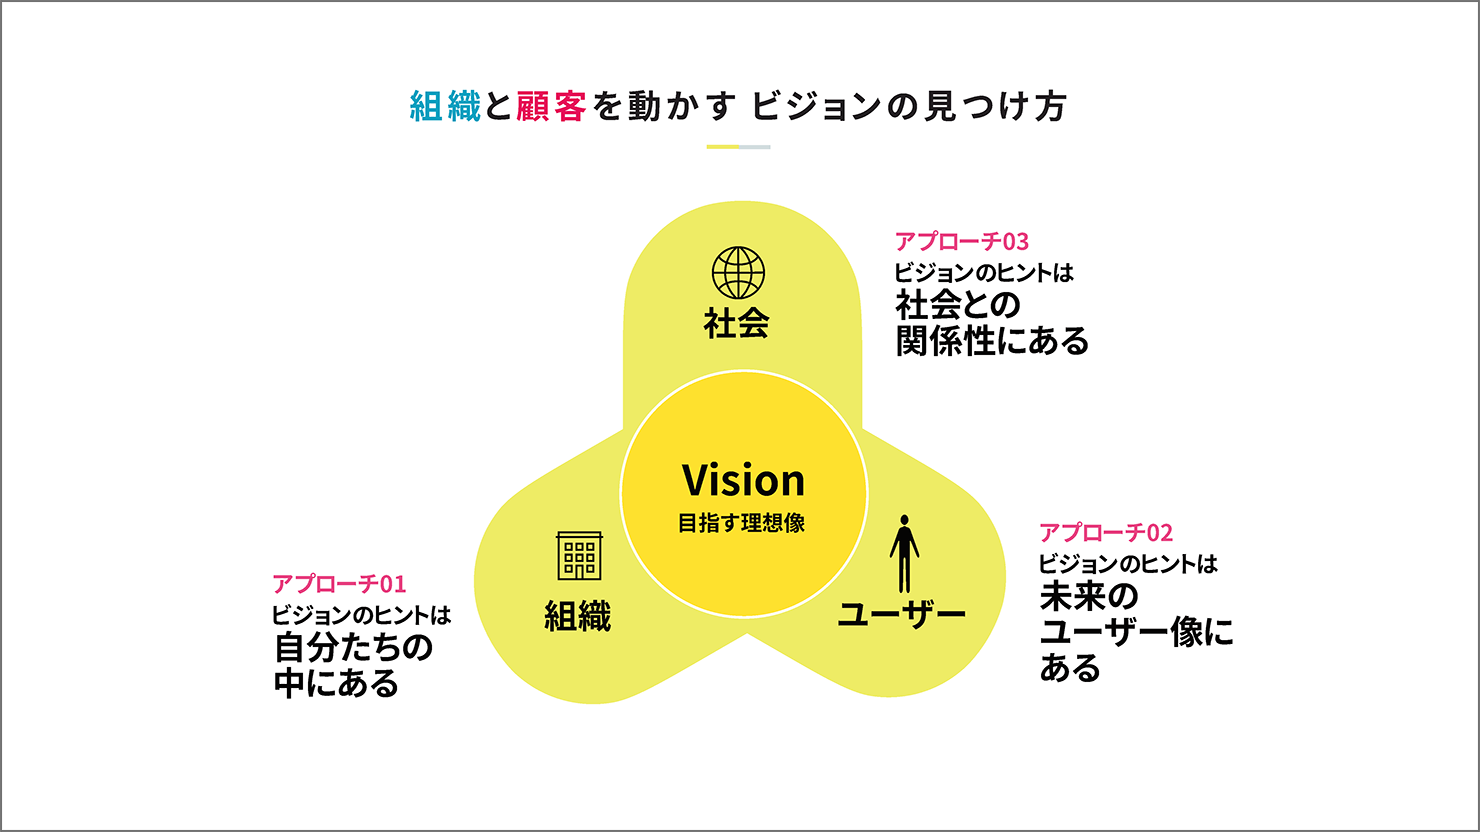 スライド：タイトル「組織と顧客を動かすビジョンの見つけ方」。社会と組織、ユーザーが交わるところにビジョンがあるという図が挿入されている。